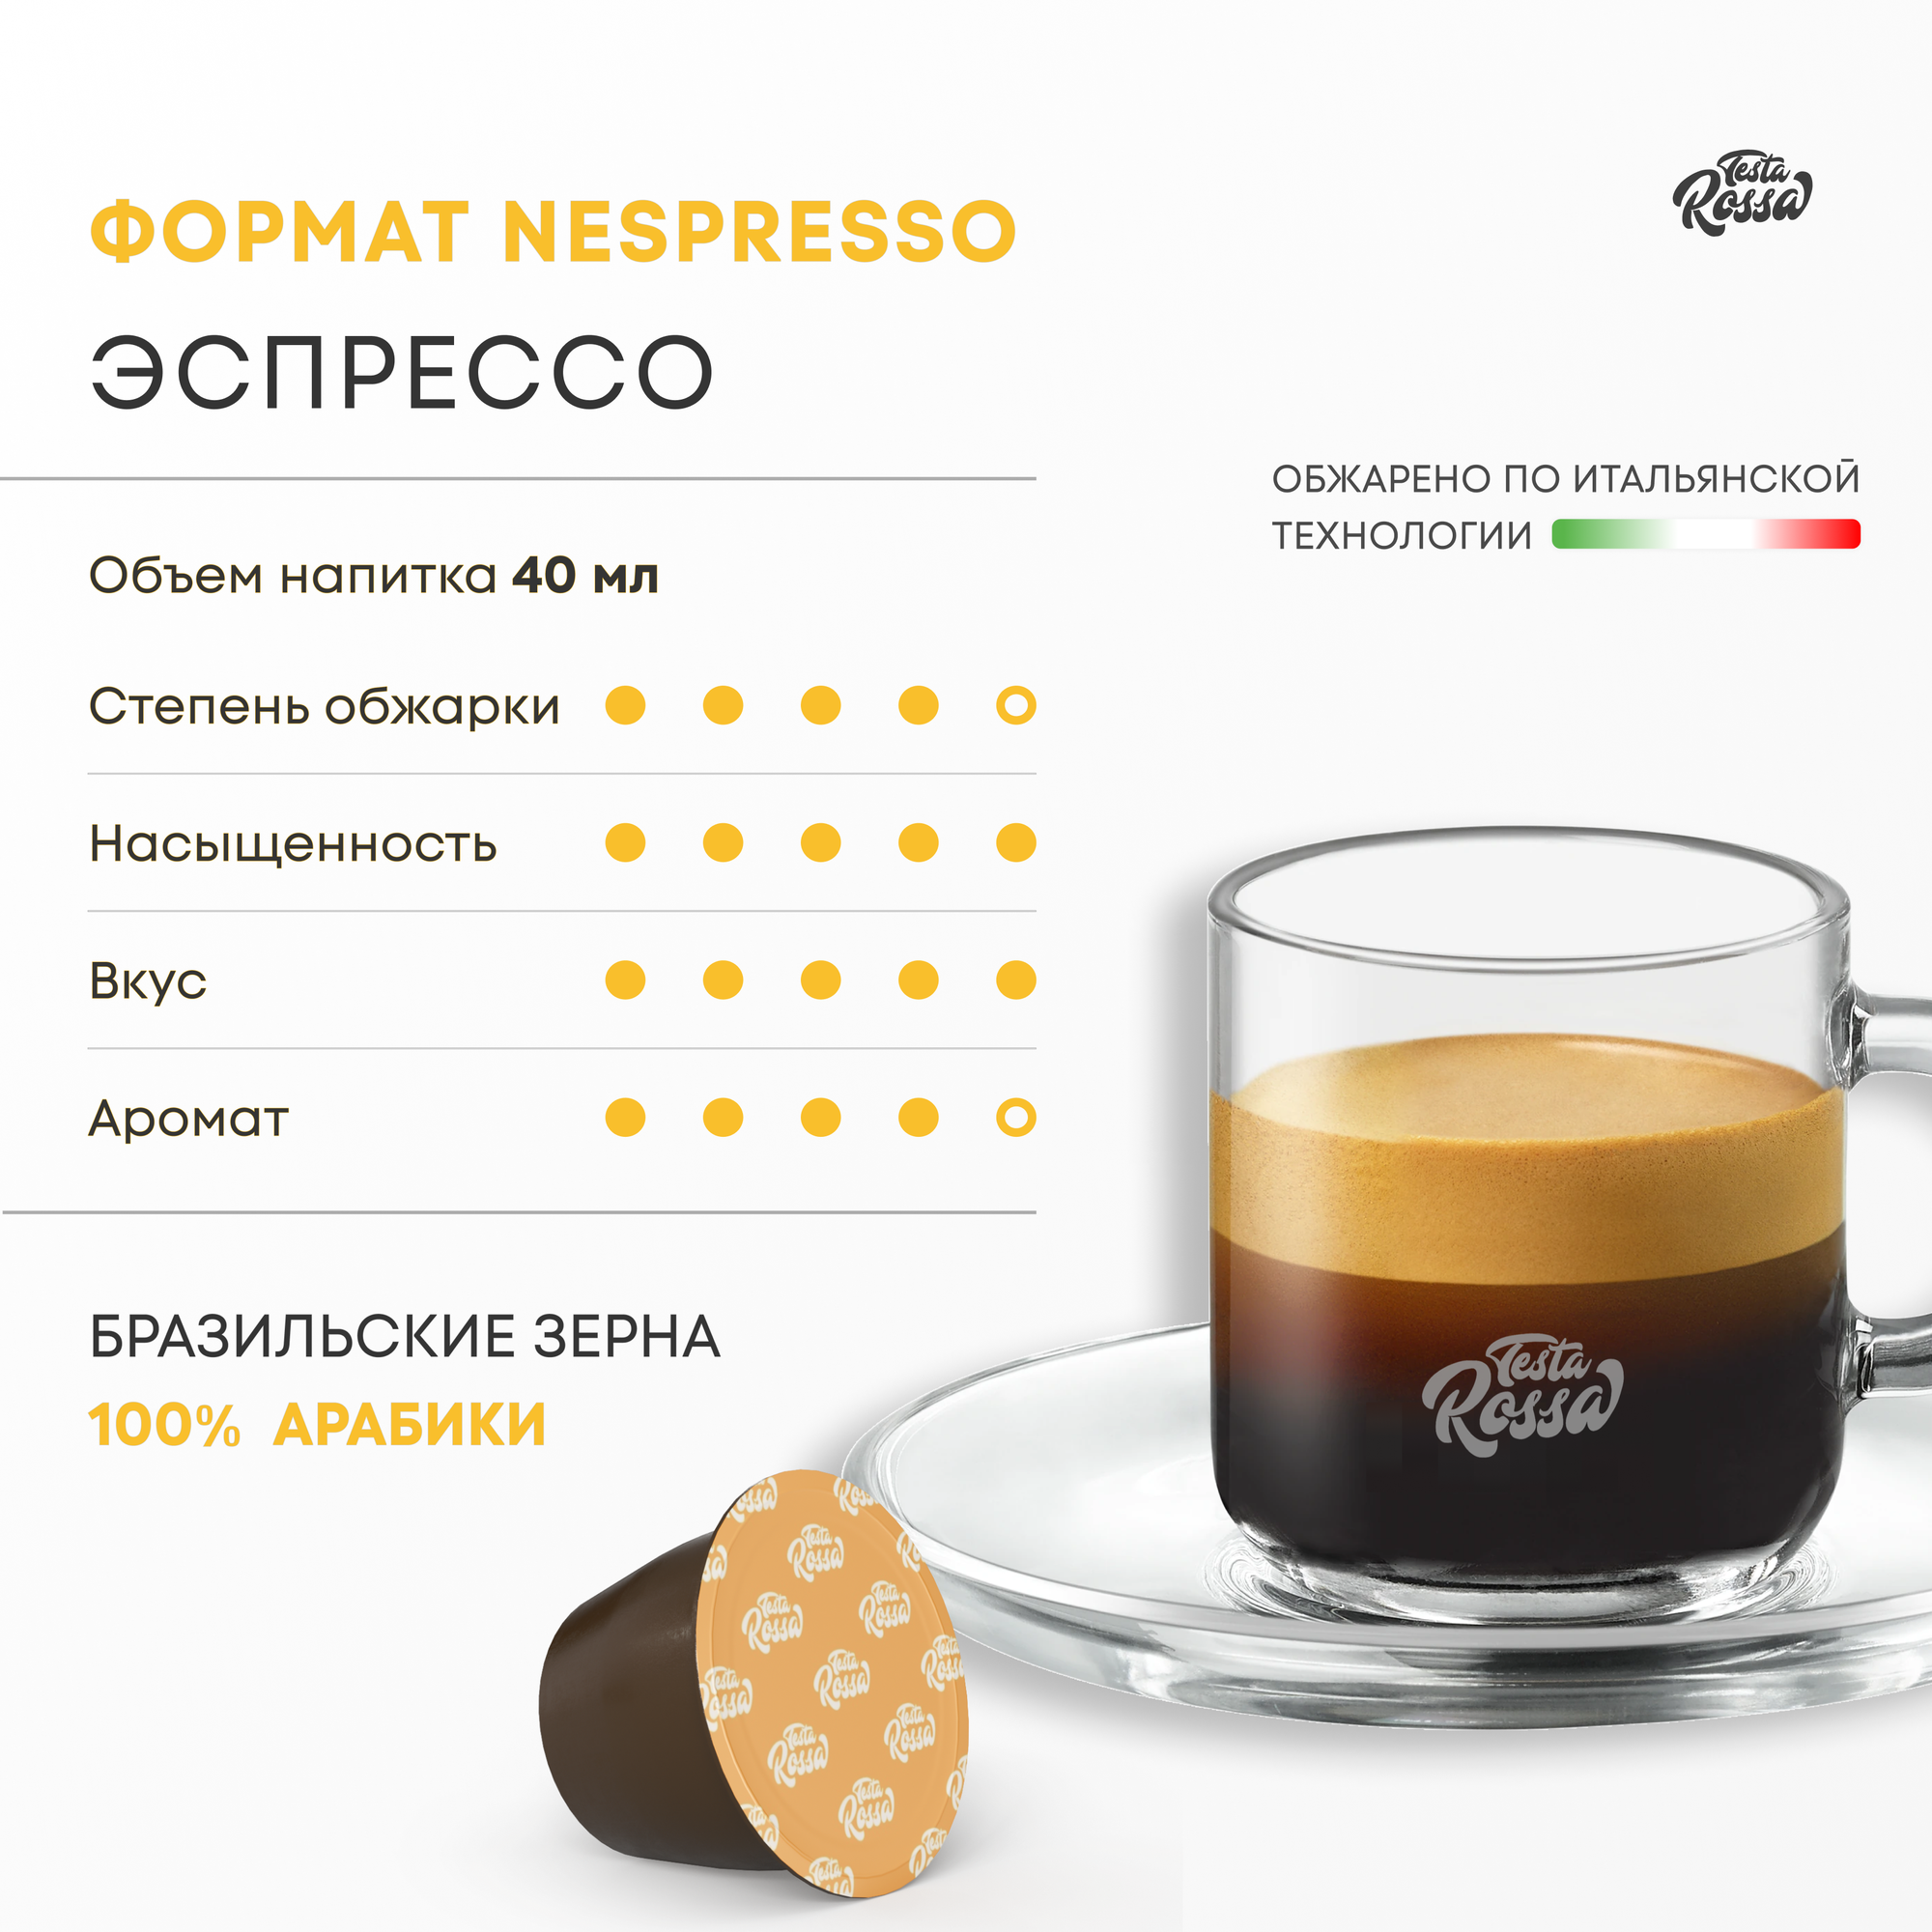 Эспрессо Арабика 100% - Капсулы Testa Rossa - 100 шт, набор кофе в капсулах неспрессо, для кофемашины NESPRESSO - фотография № 2